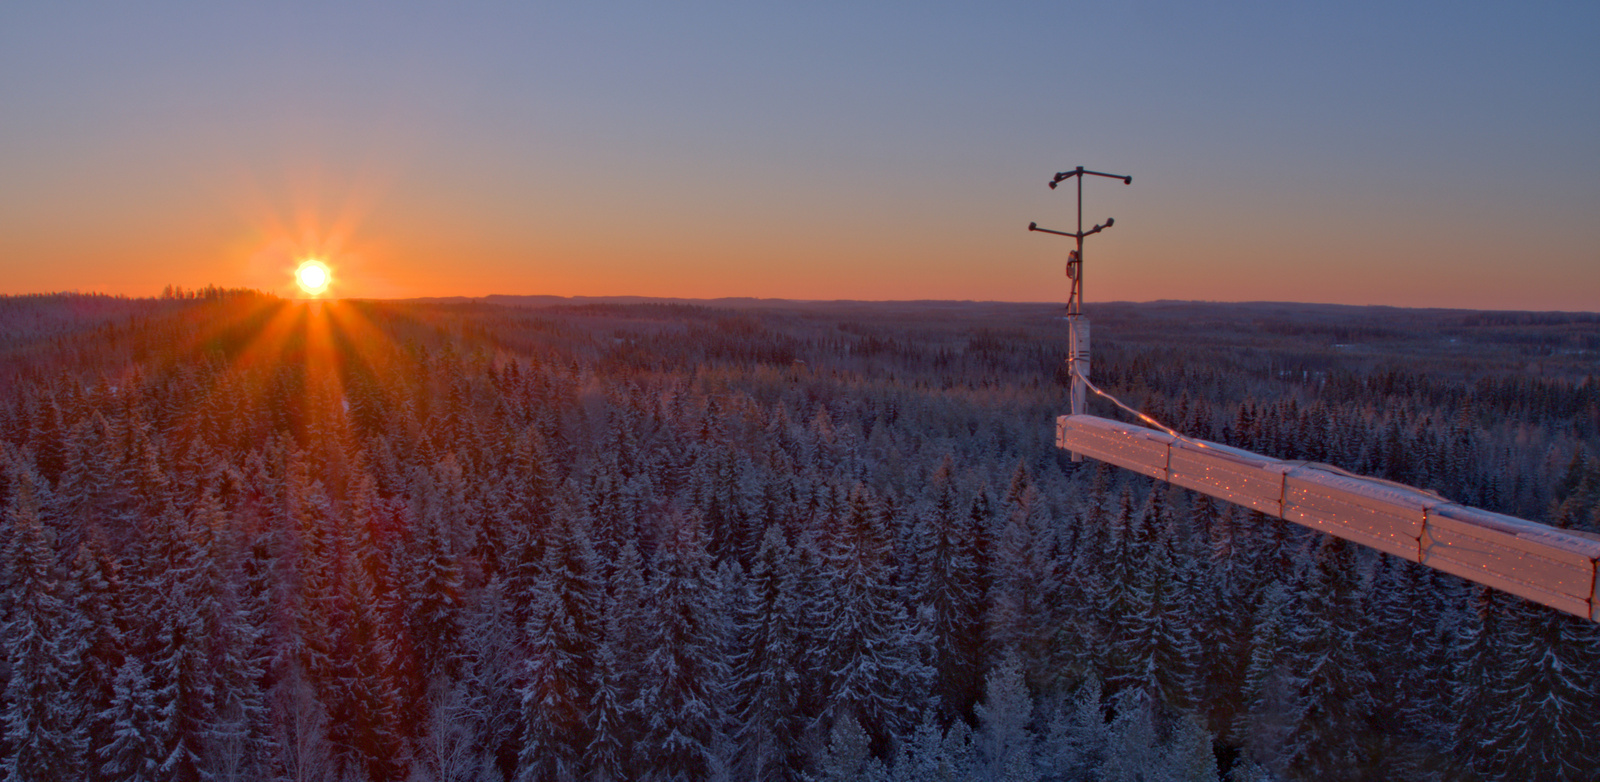 Landscape at Hyytiälä forest. Photo by Juho Aalto